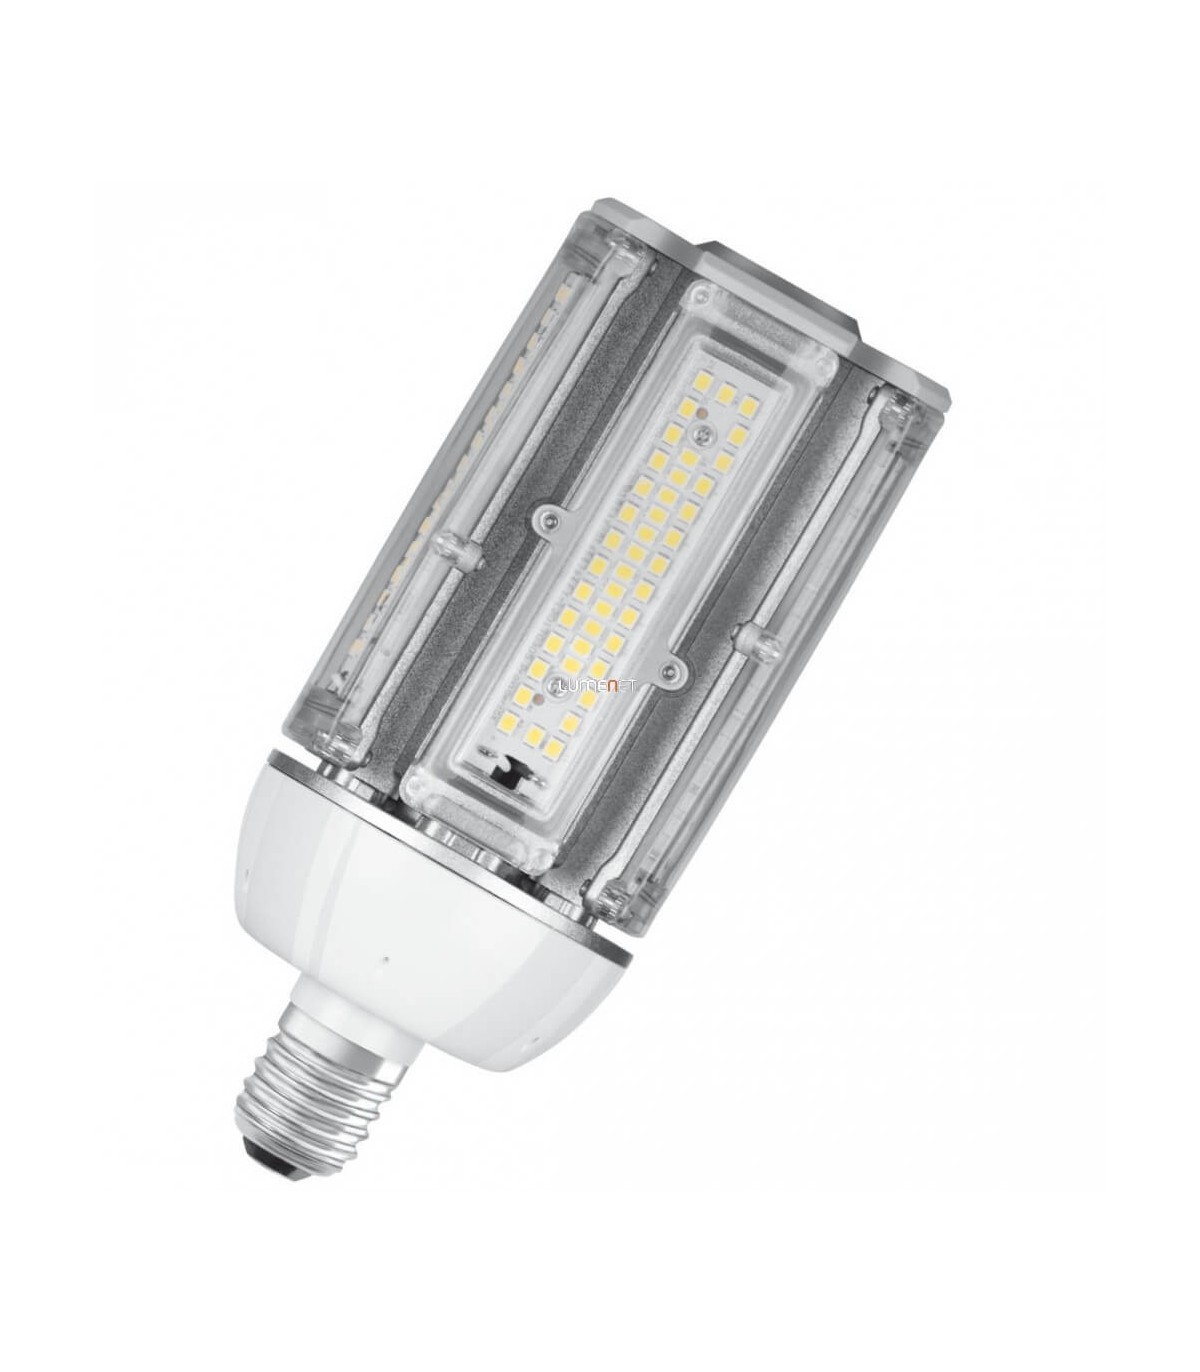 Ampoule LED LUXEN GLOBE G120 17W équivalent 100W 1521lumens Blanc